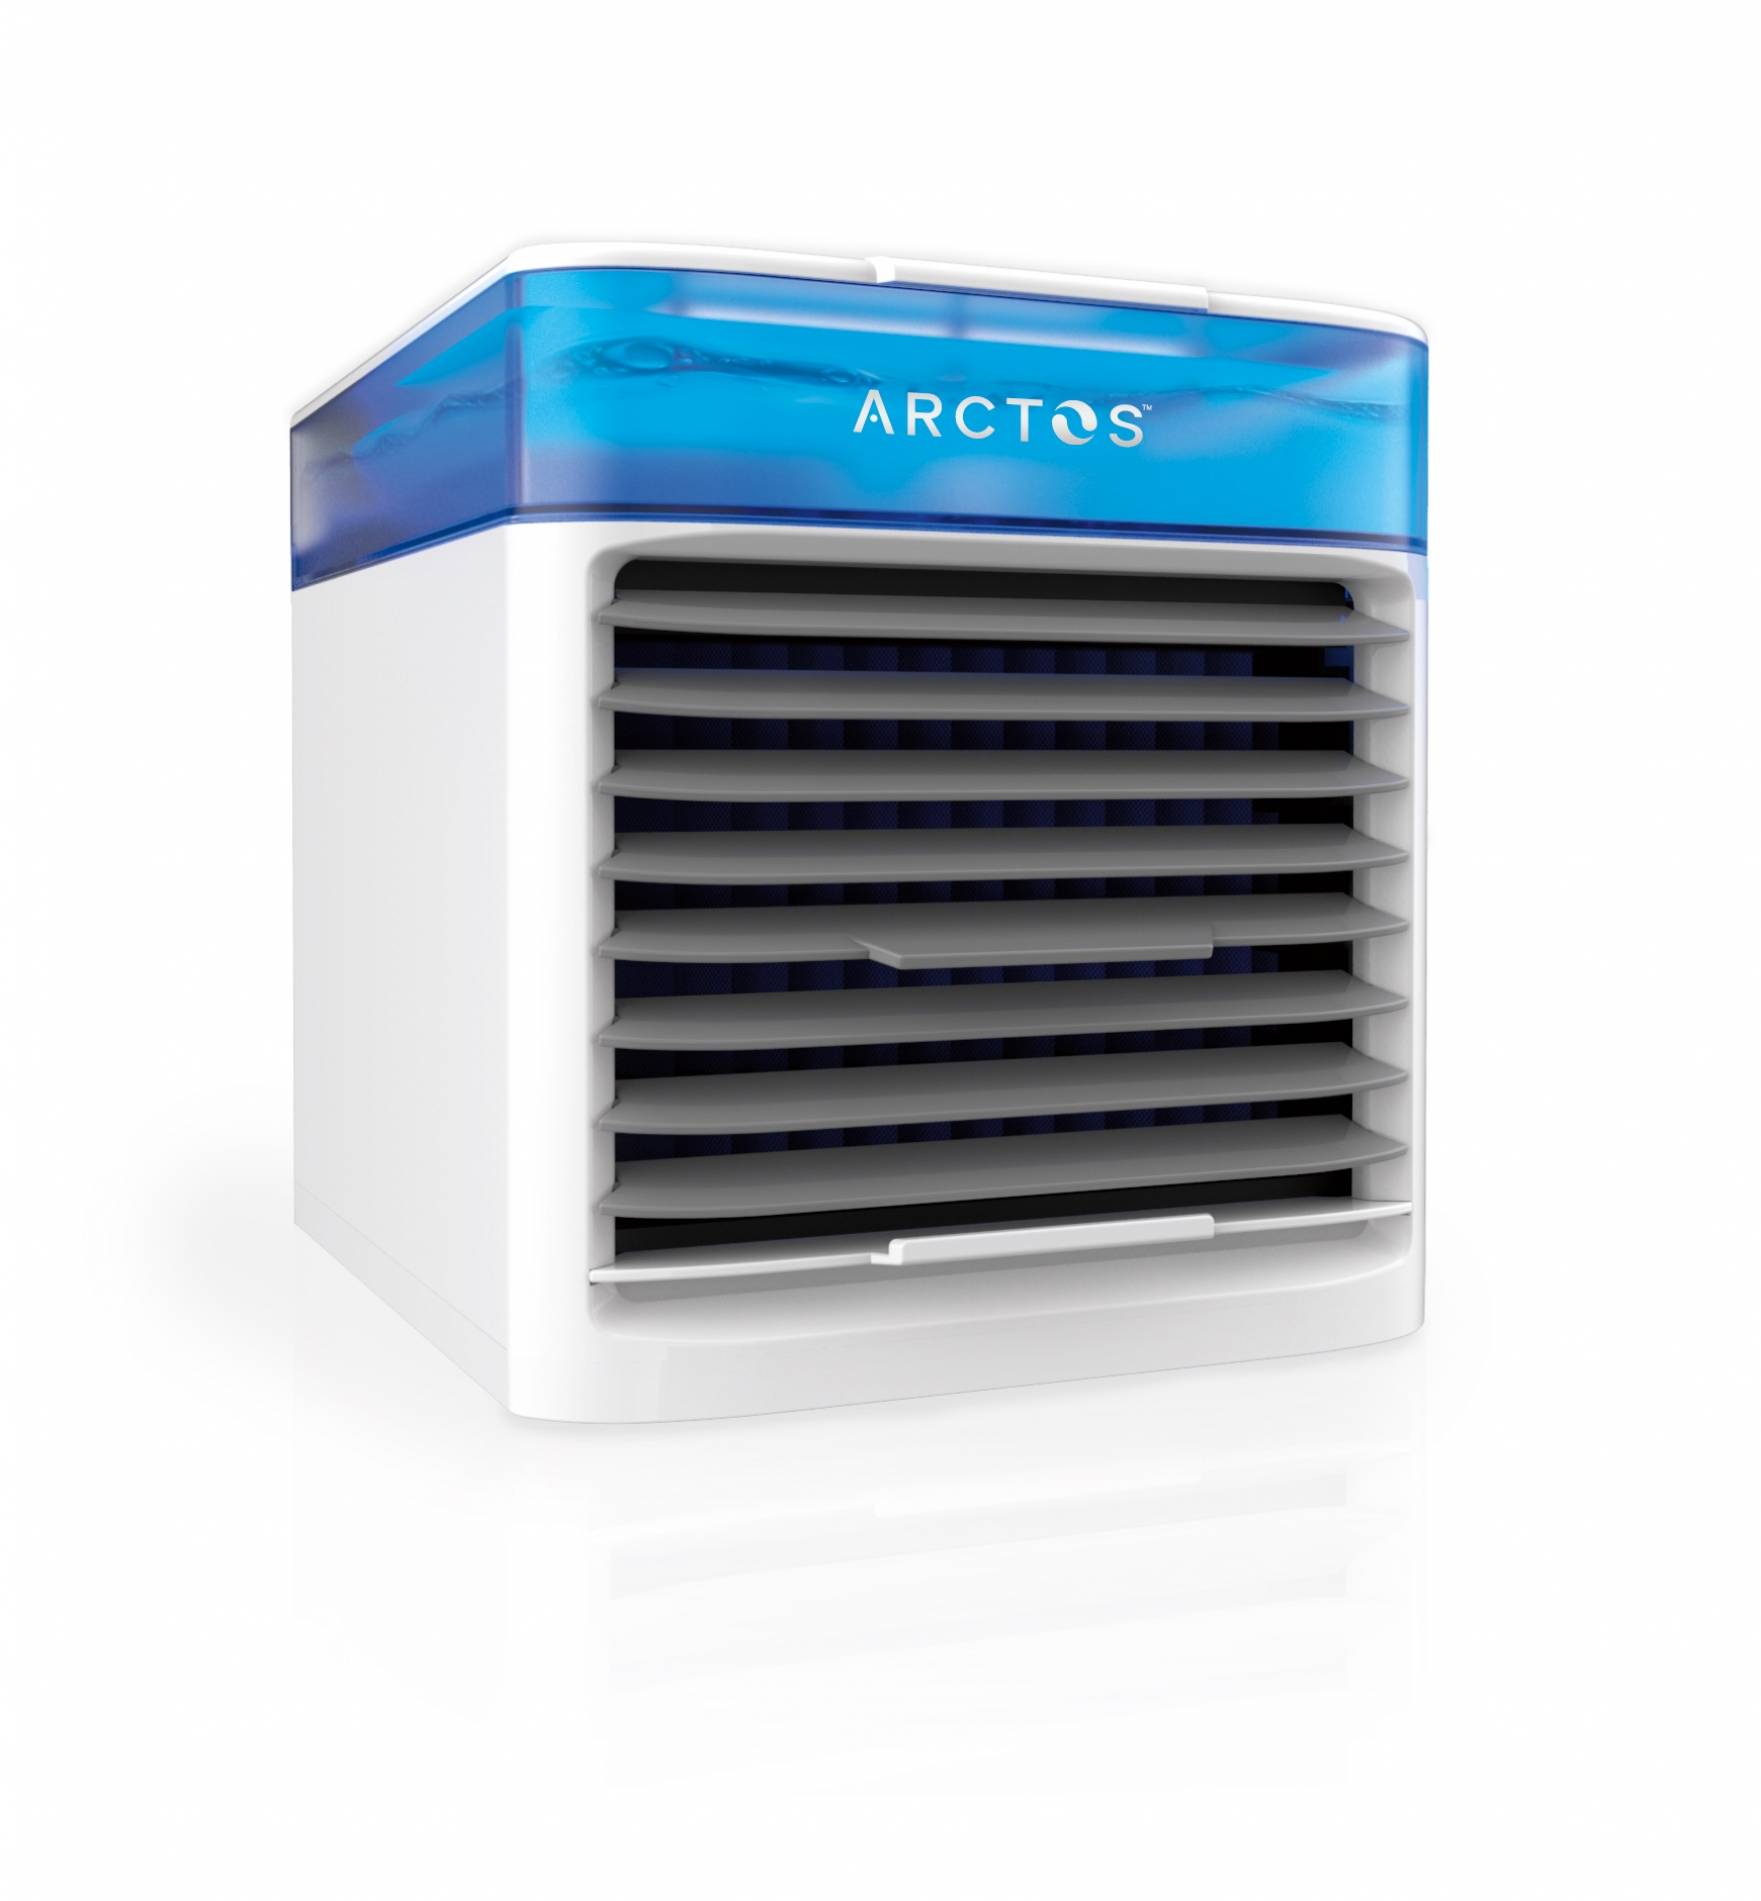 Arctos Personal Air Conditioner Reviews